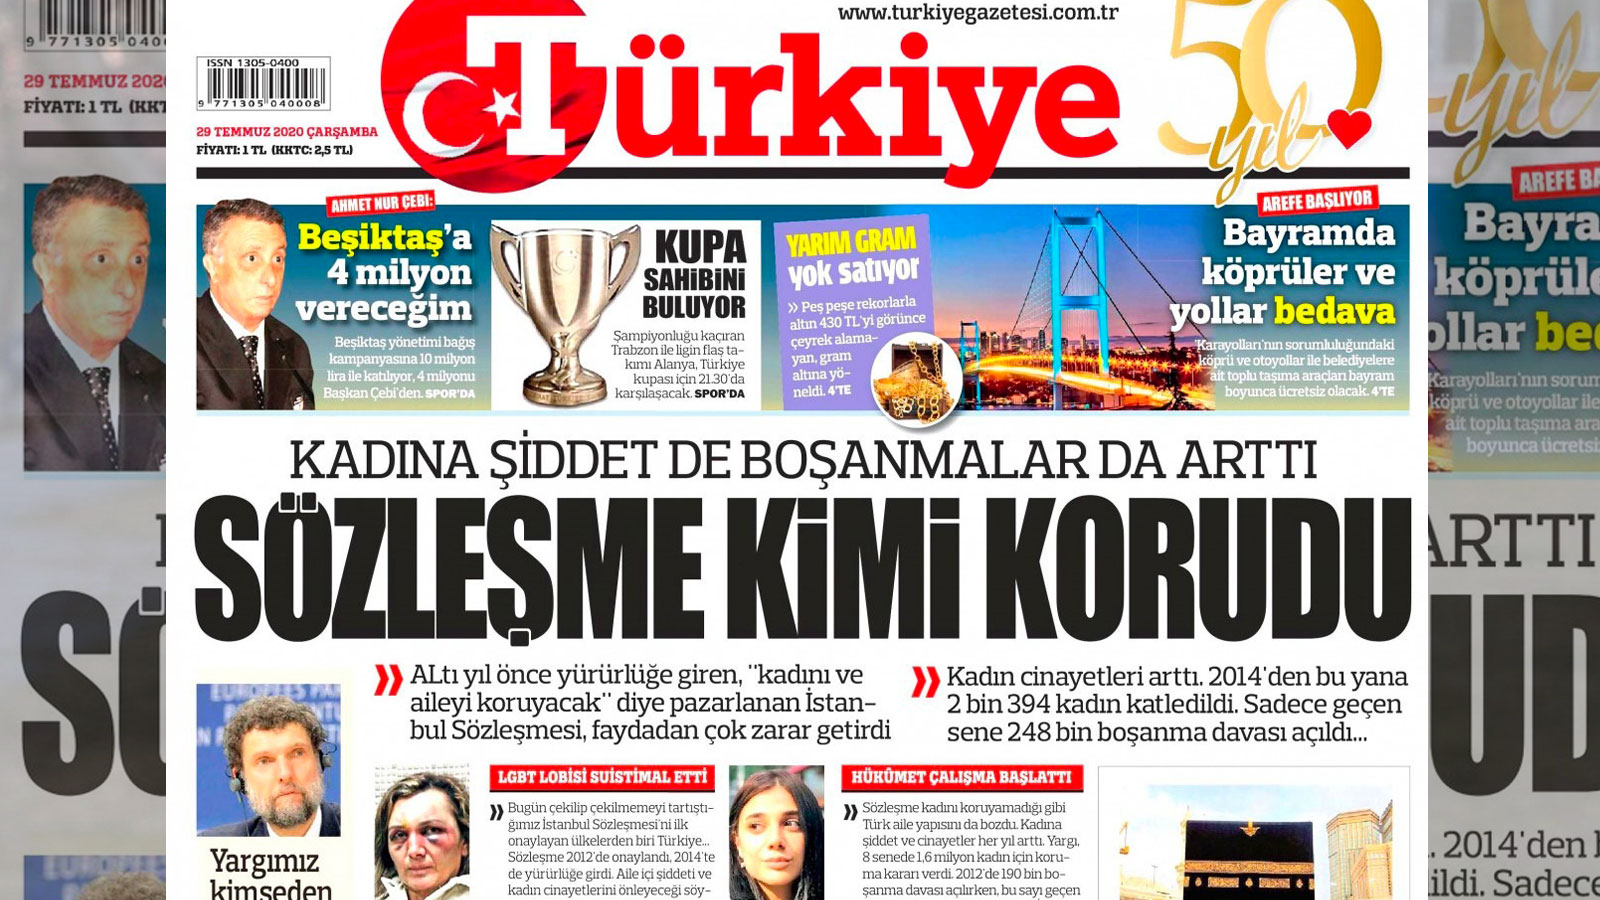 turkiye gazetesinin hedefinde istanbul sozlesmesi var turk aile yapisini bozdu bosanmalar artti lgbti lobileri tarafindan suistimal edildi